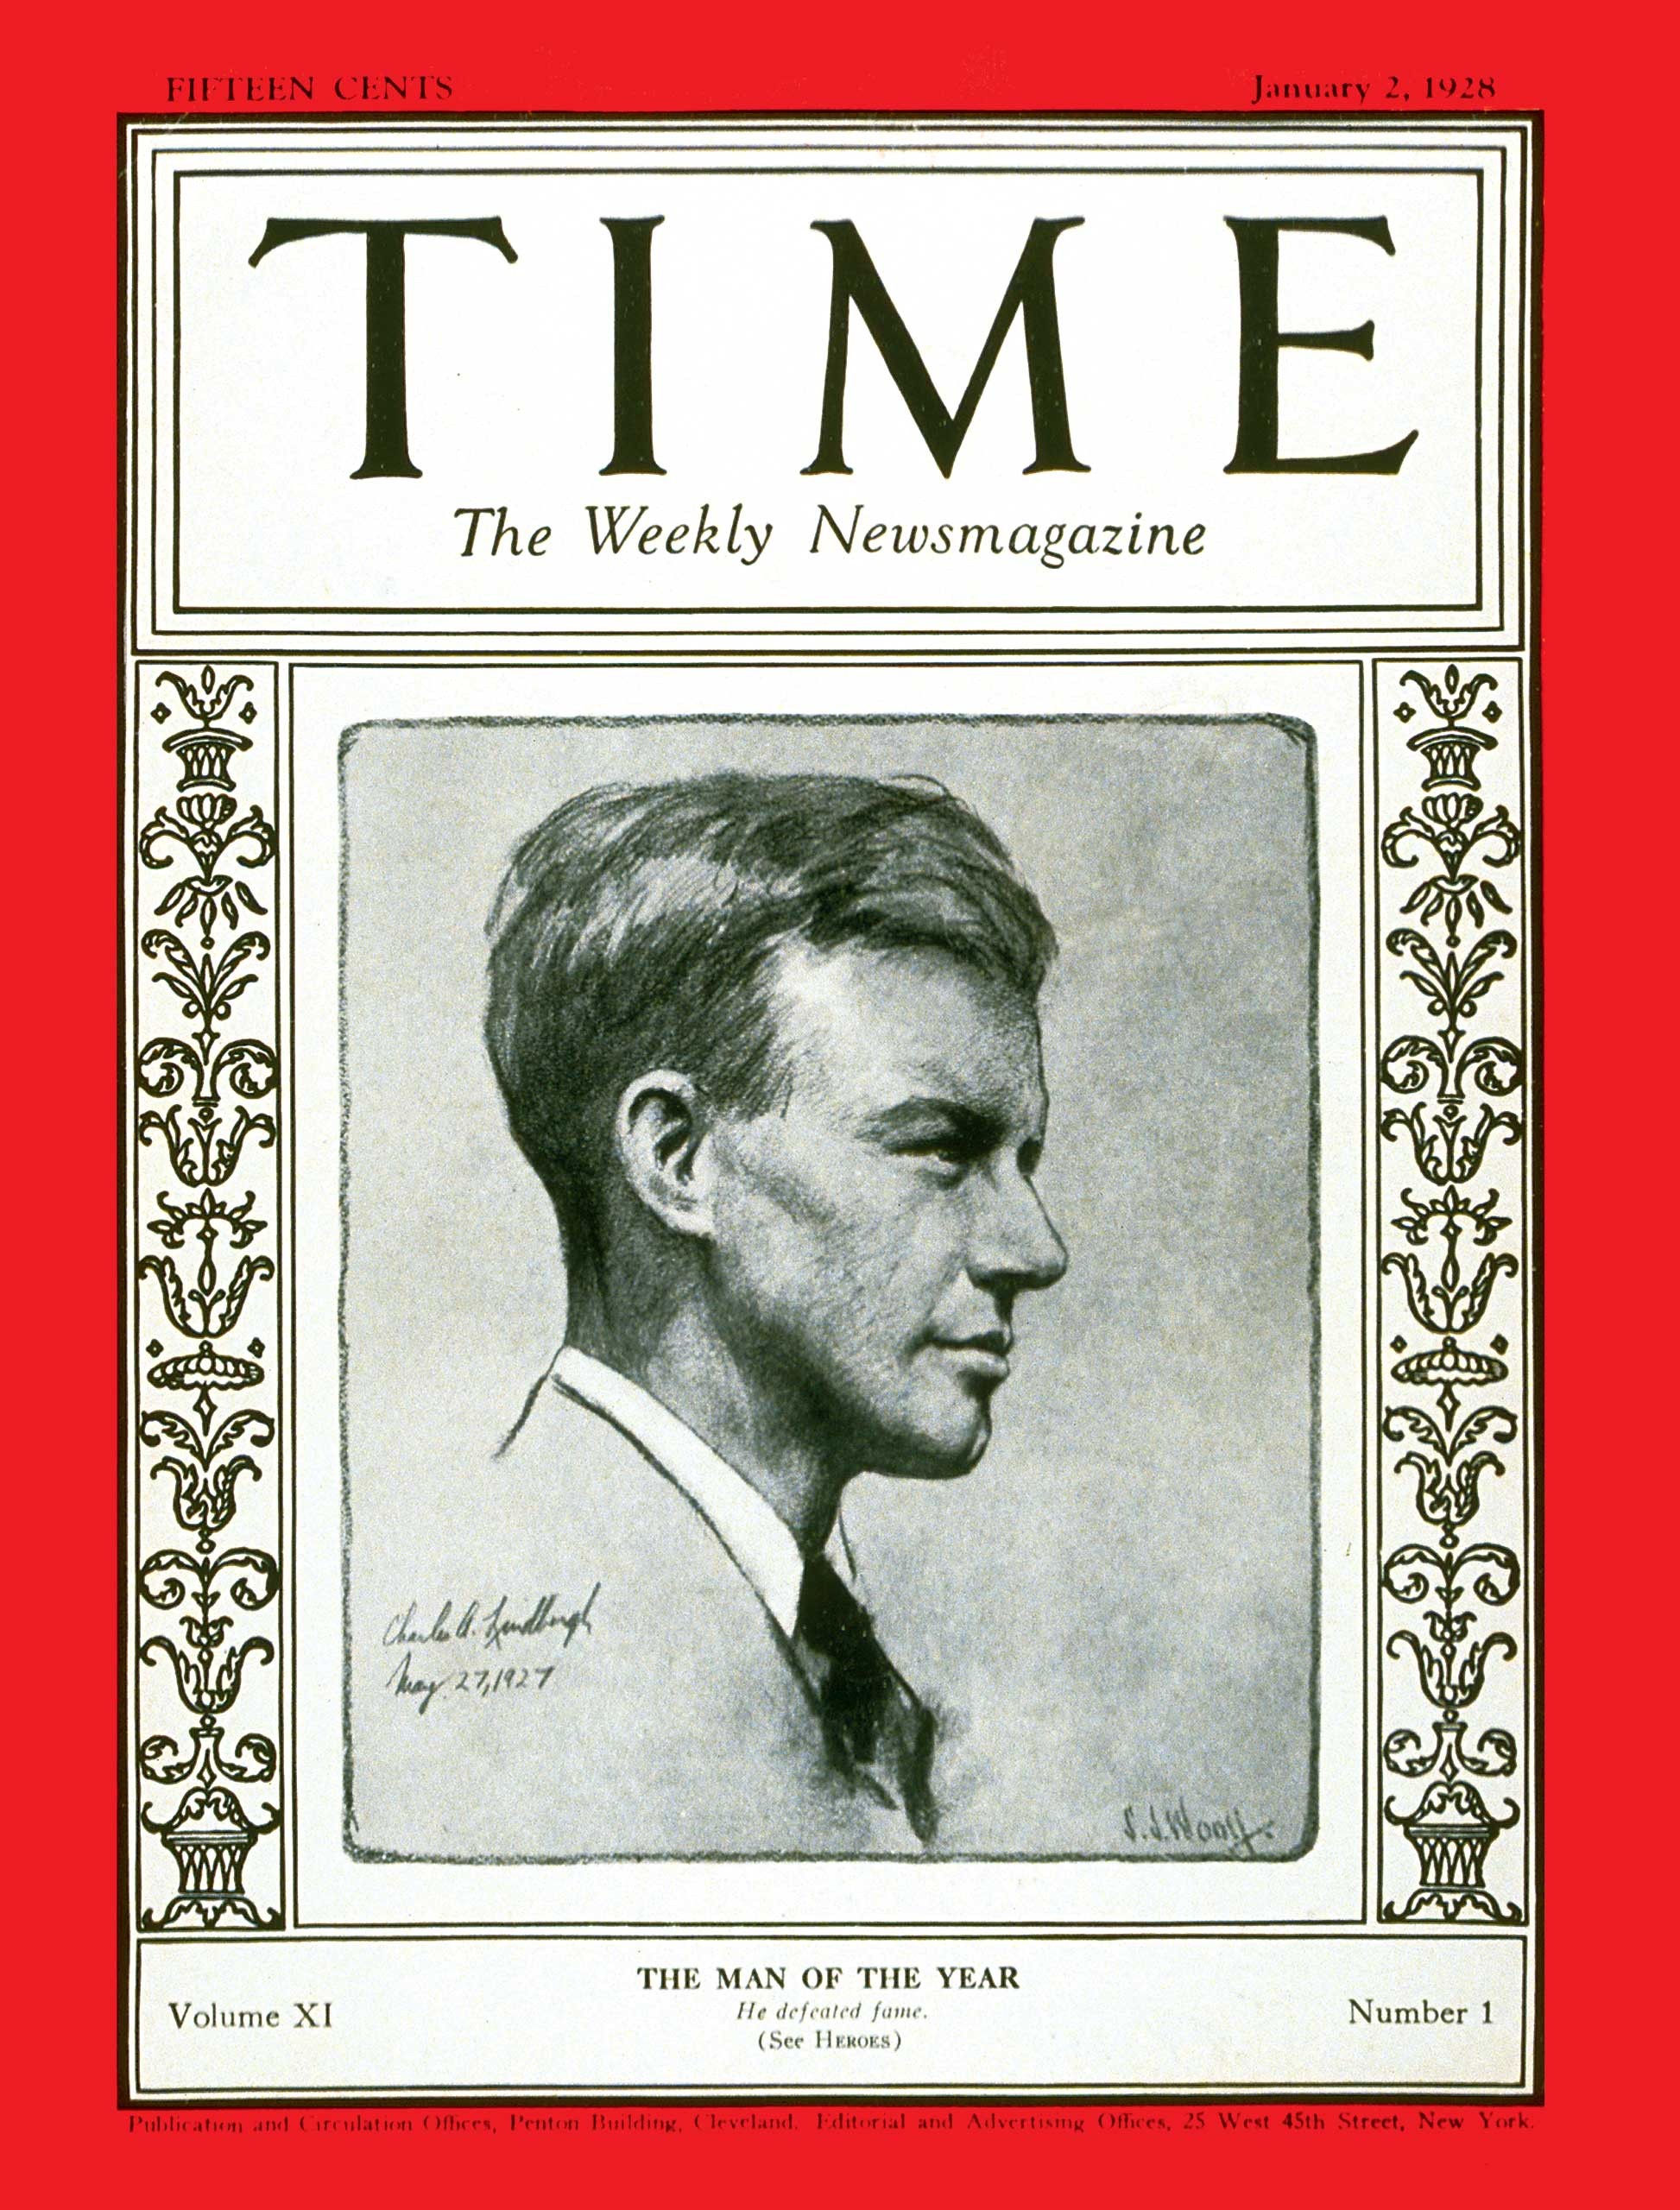 Charles Lindbergh: Aviador foi o primeiro 'Homem do ano' escolhido pela revista